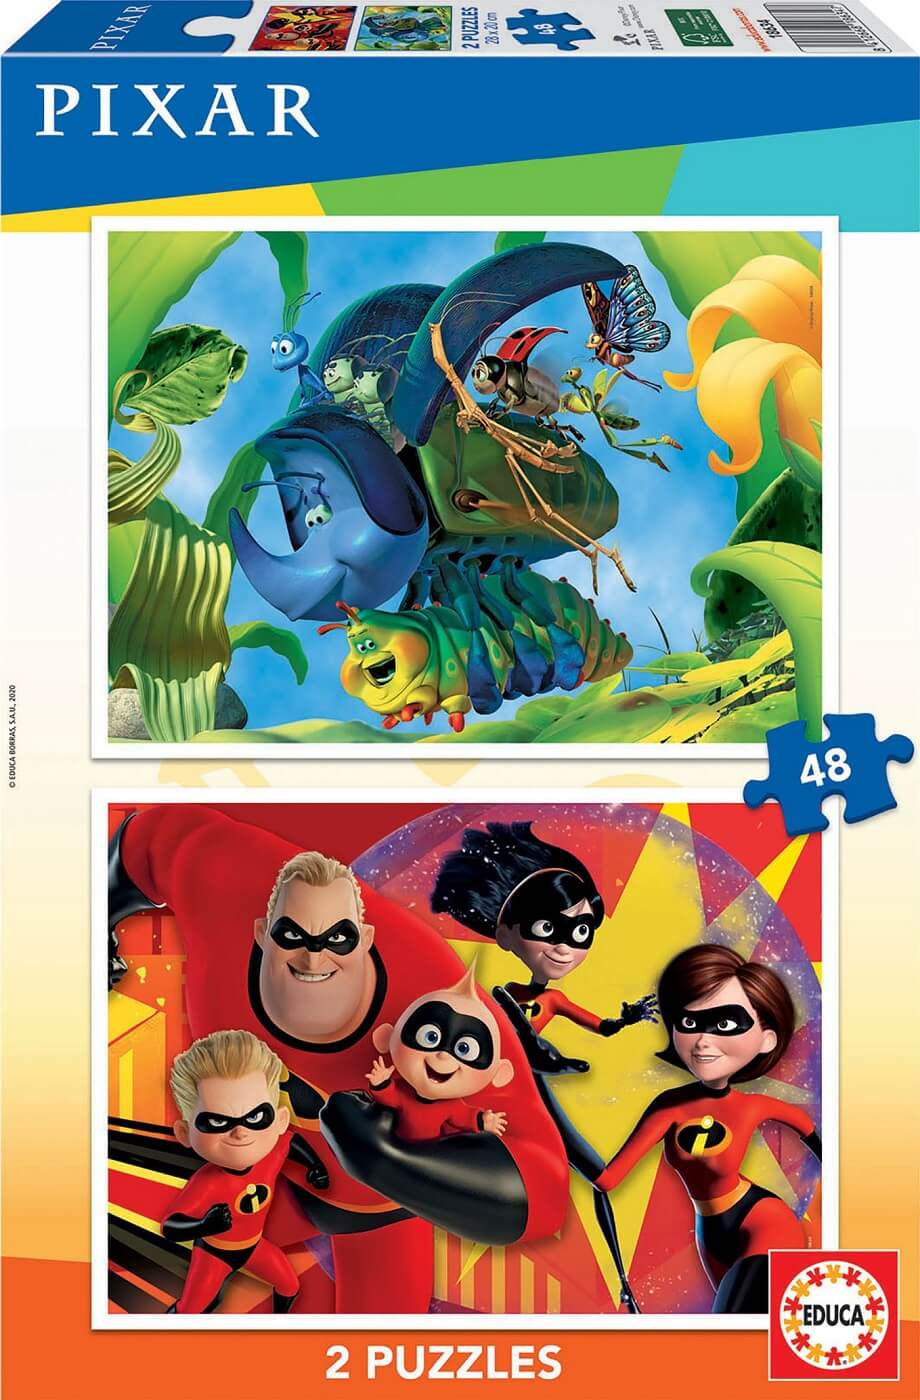 2x48 Pixar Bichos y Los Increibles